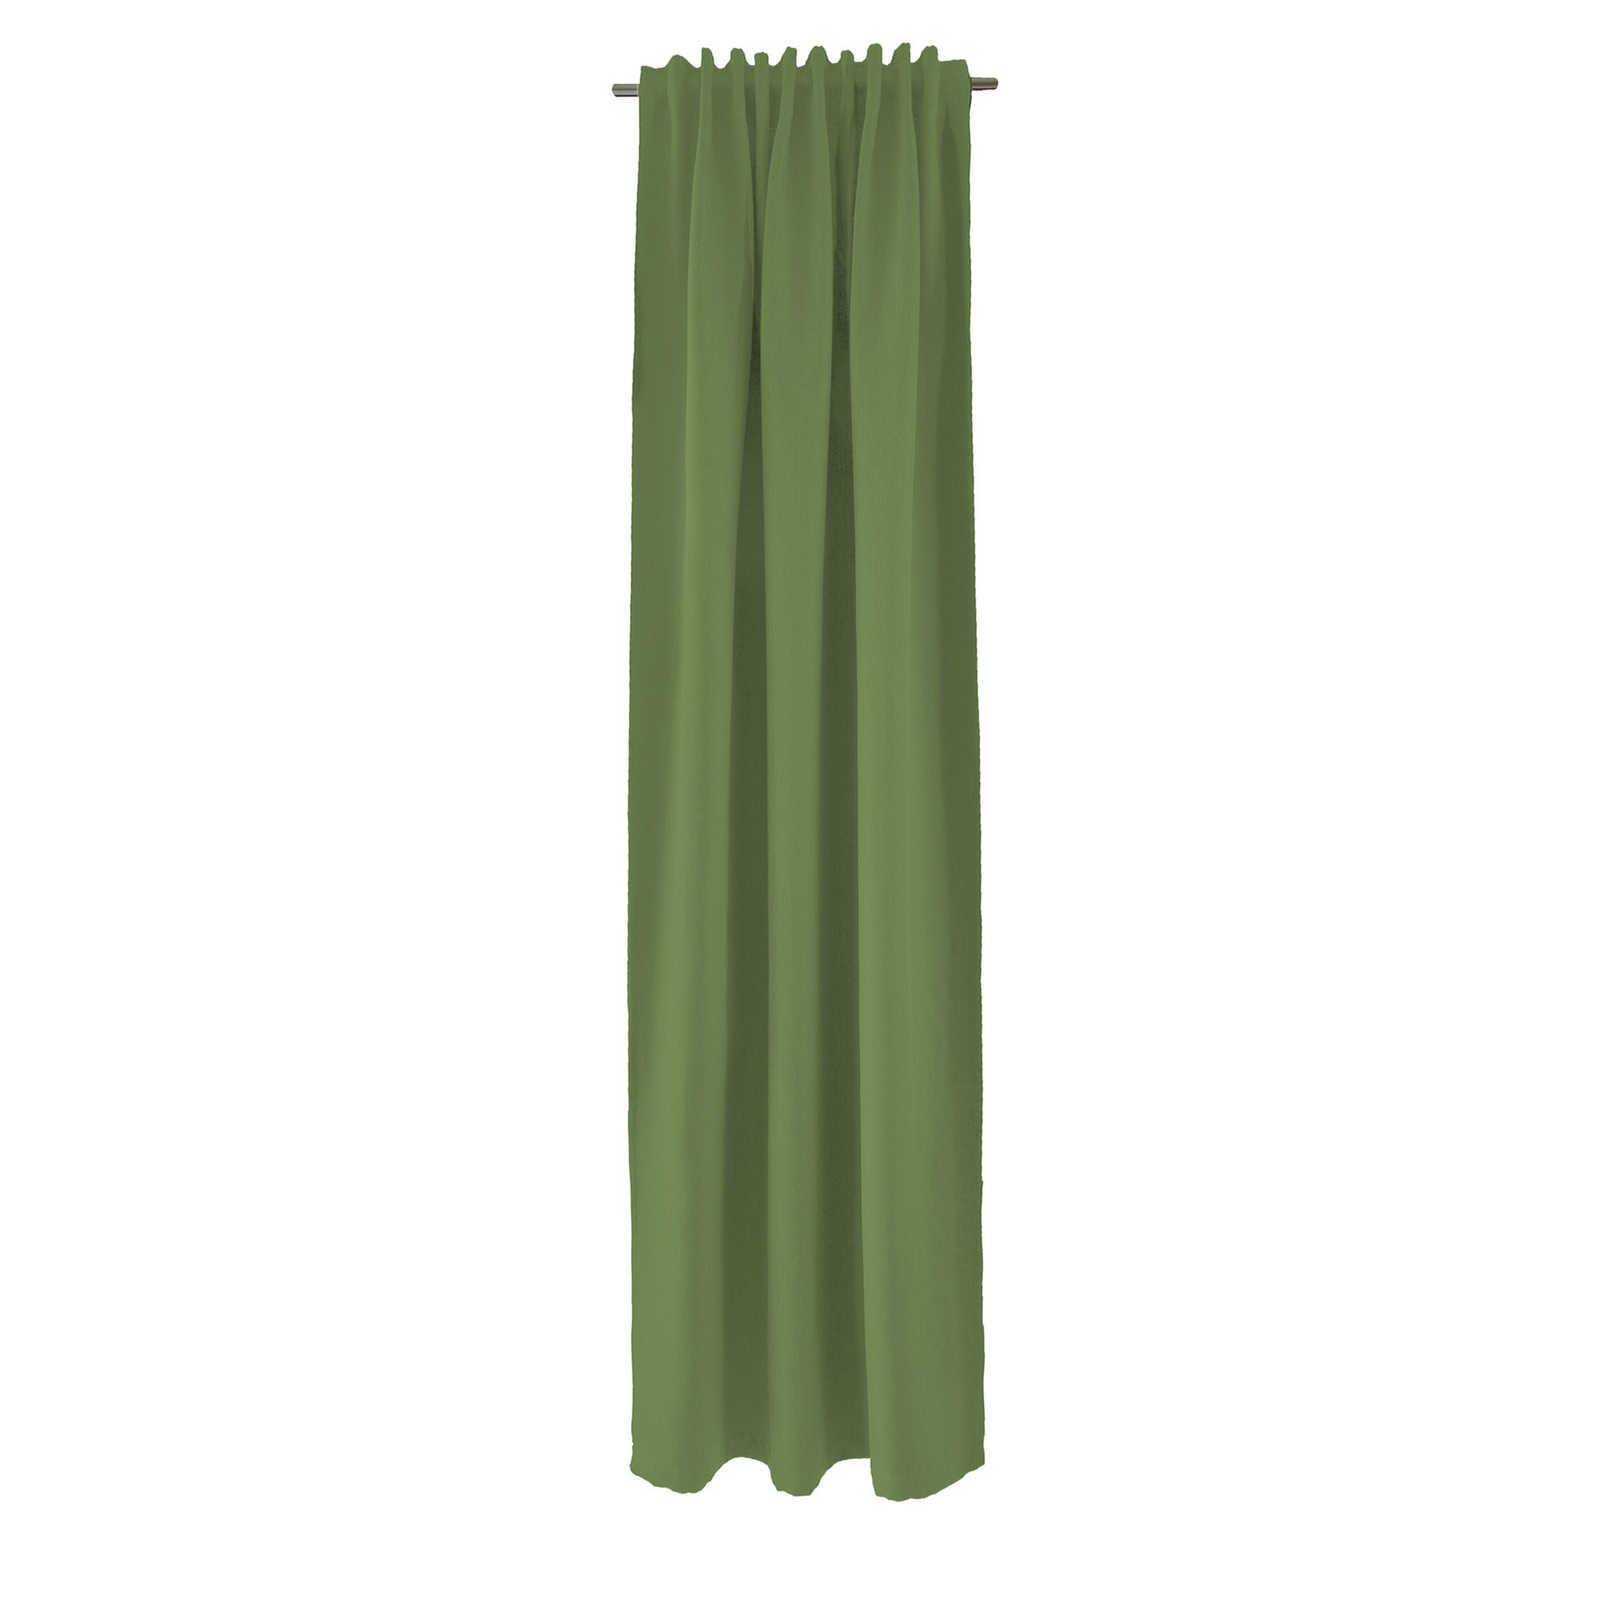 Sciarpa decorativa 140 cm x 245 cm in fibra artificiale verde oliva
